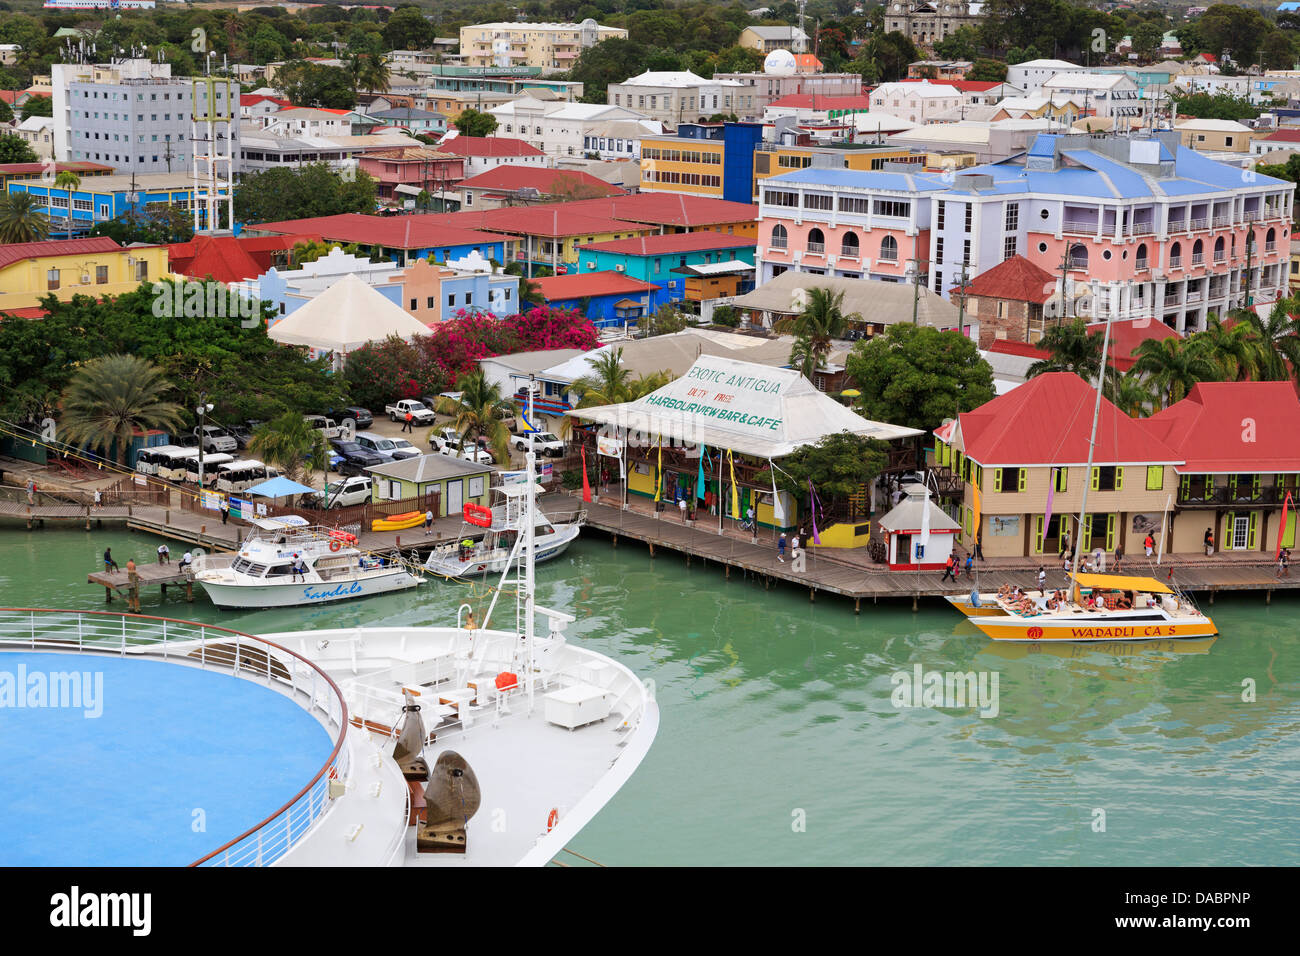 Bateau de croisière dans le port de St. John's, Antigua, Antigua et Barbuda, Iles sous le vent, Antilles, Caraïbes, Amérique Centrale Banque D'Images